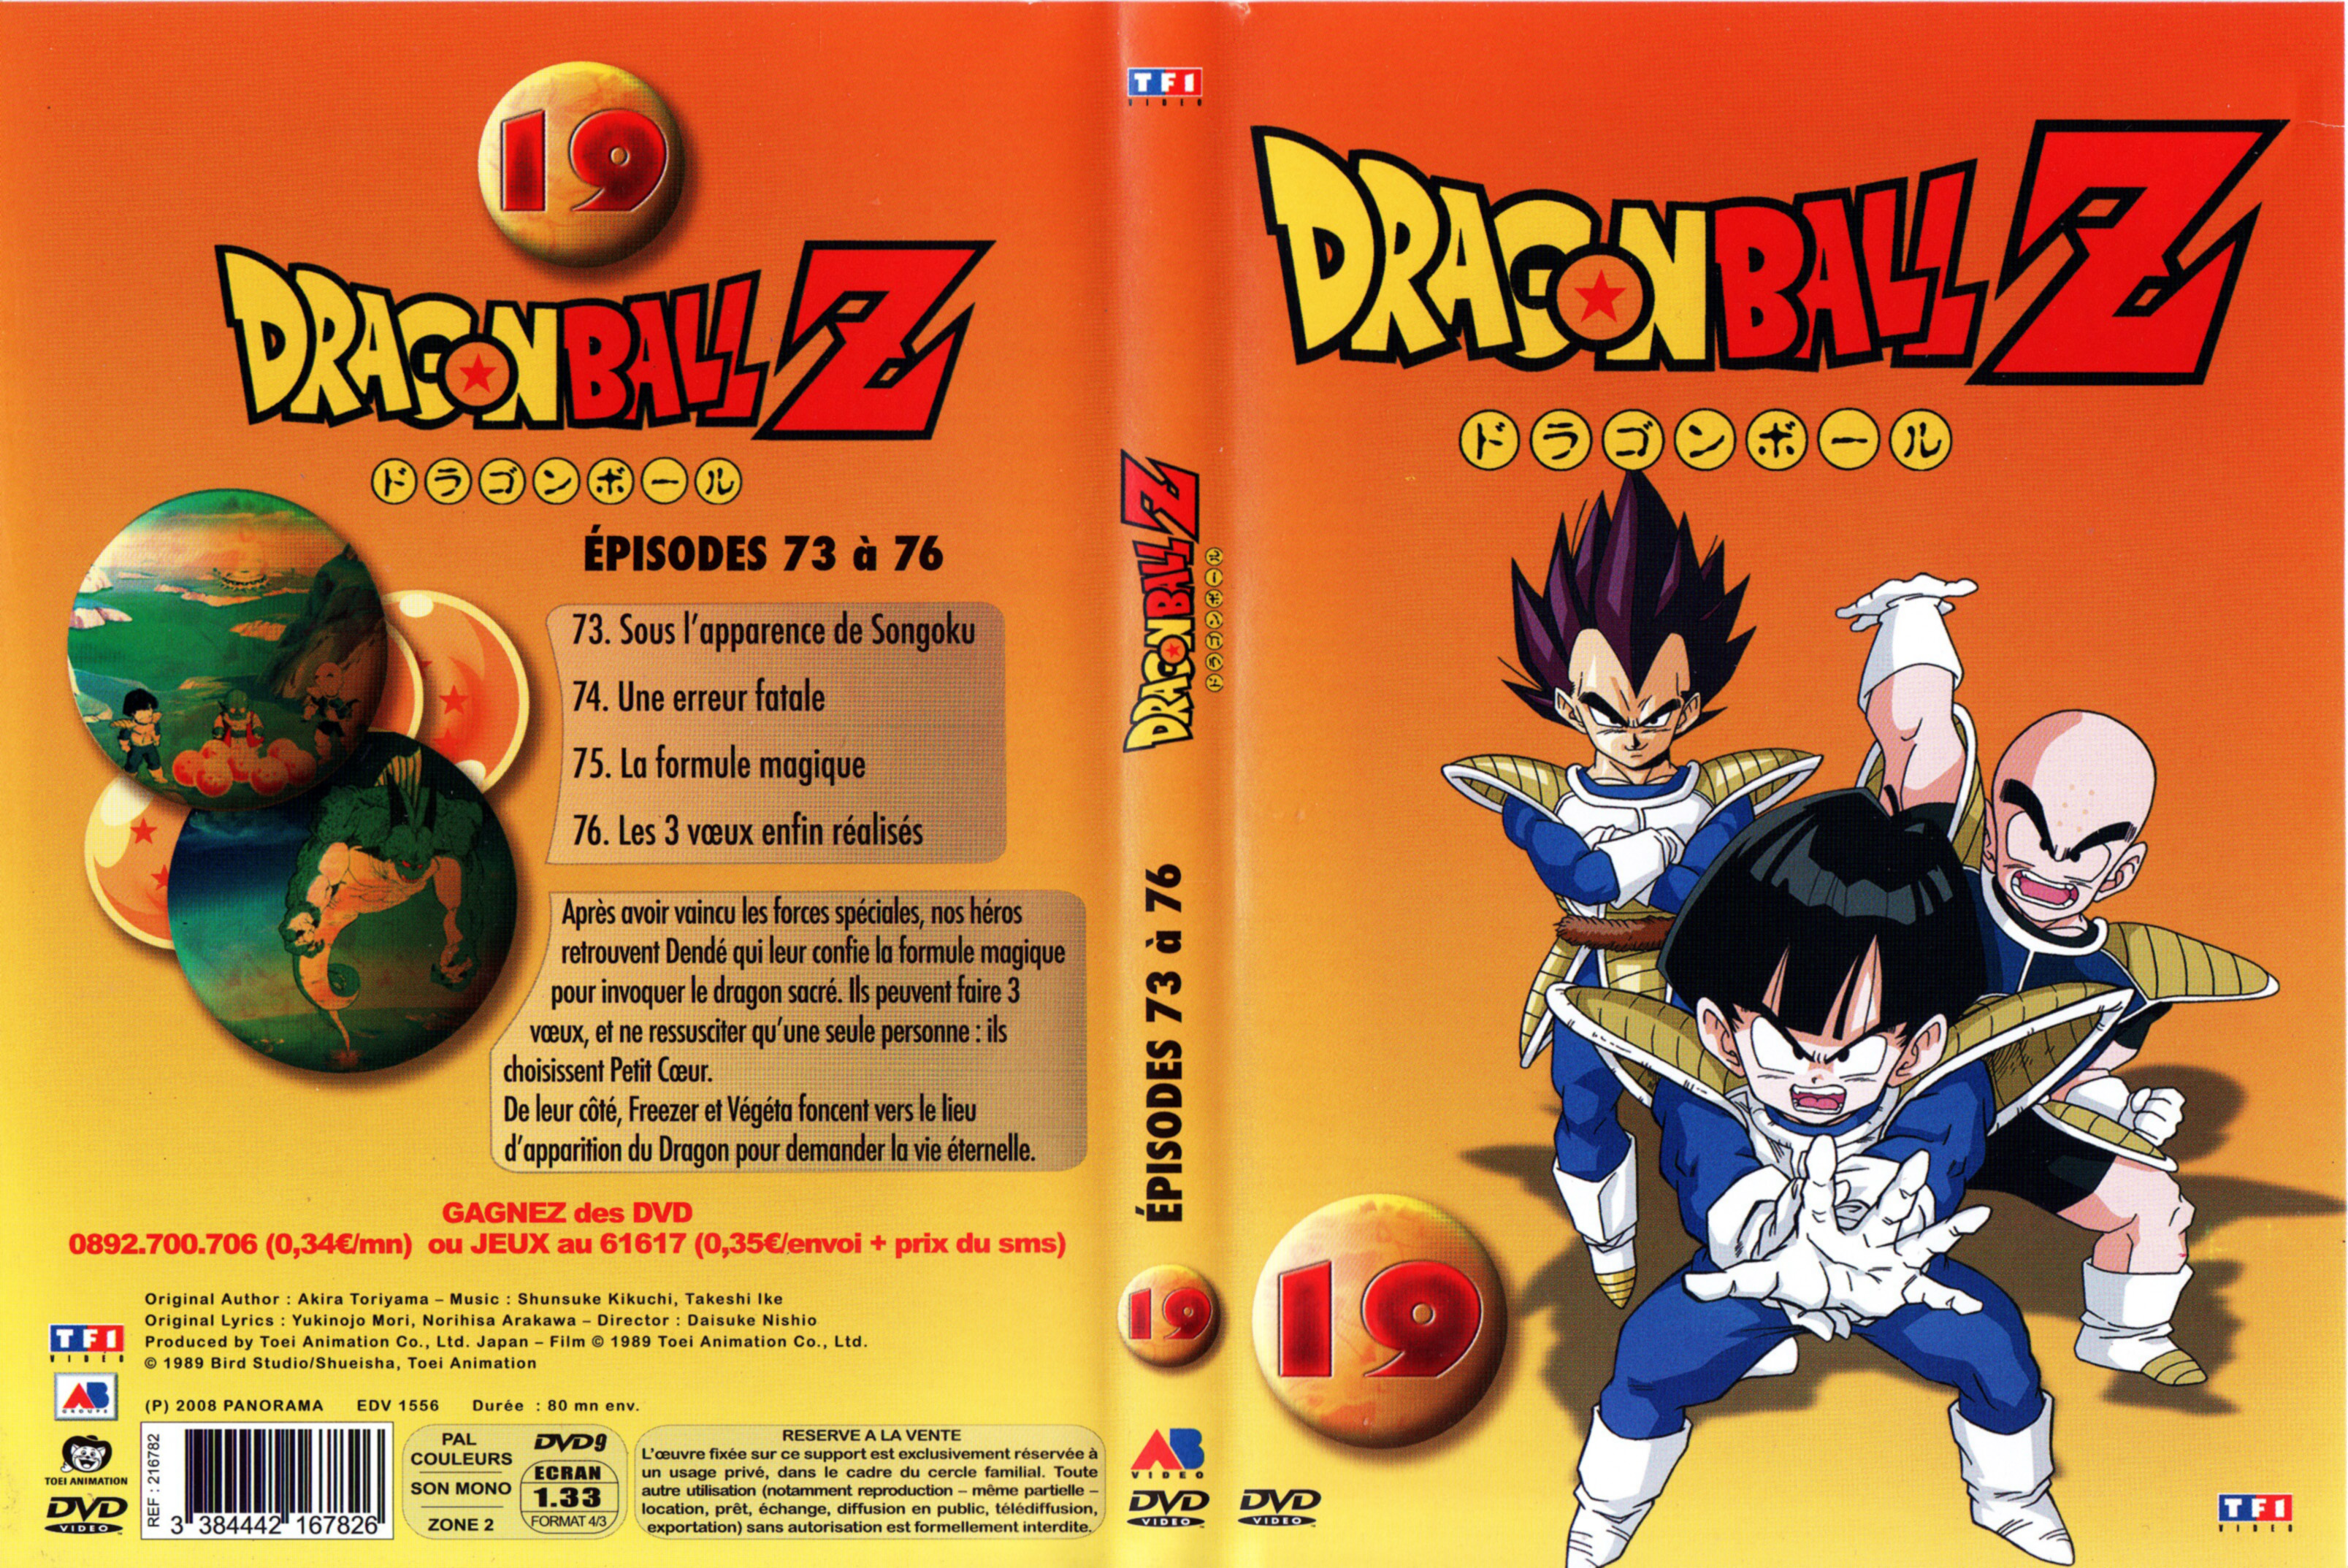 Jaquette DVD Dragon ball Z vol 19 v4